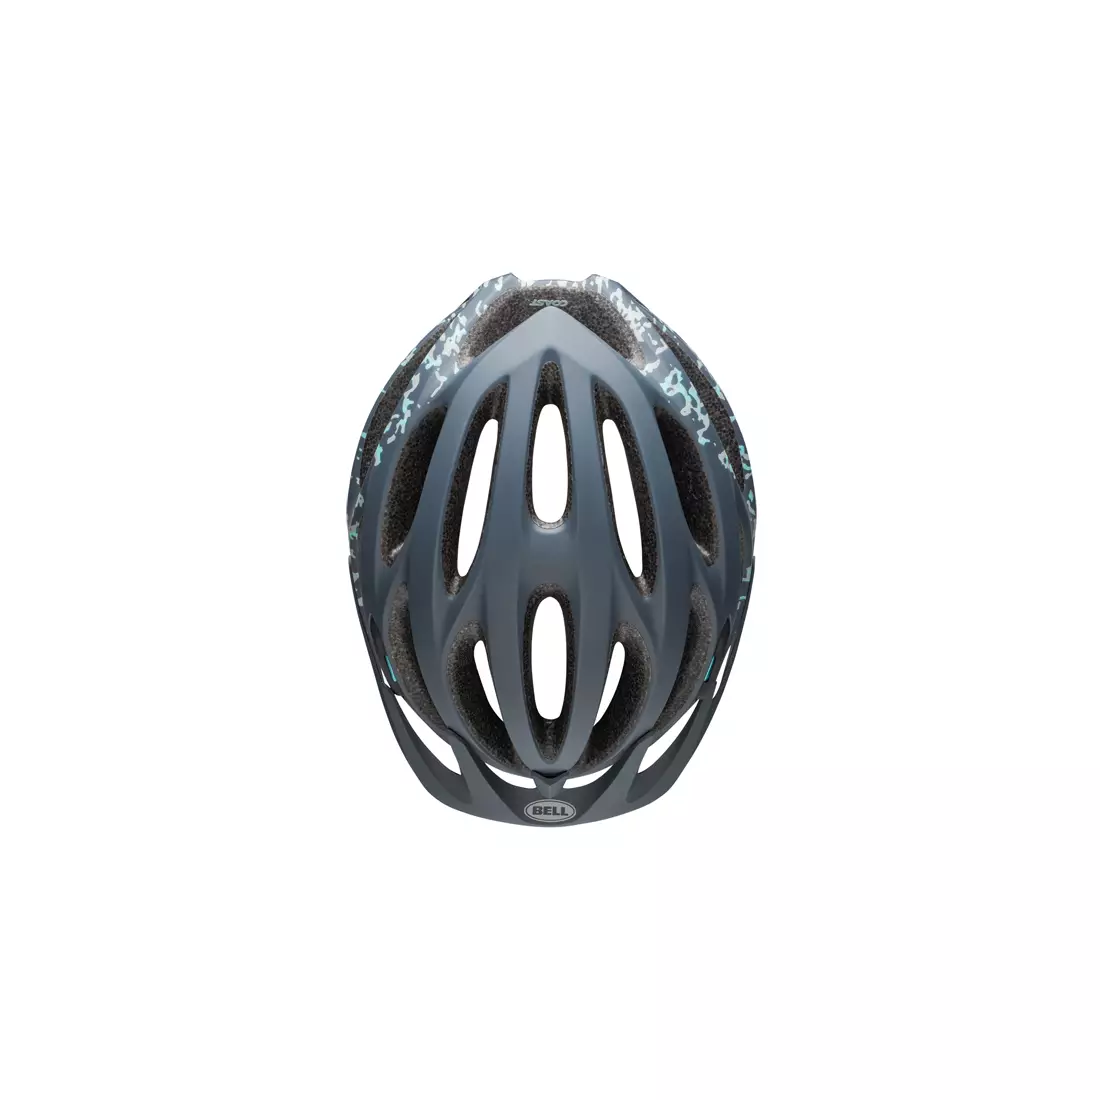 BELL MTB COAST JOY RIDE BEL-7088746 dámska cyklistická prilba matný olovený kameň